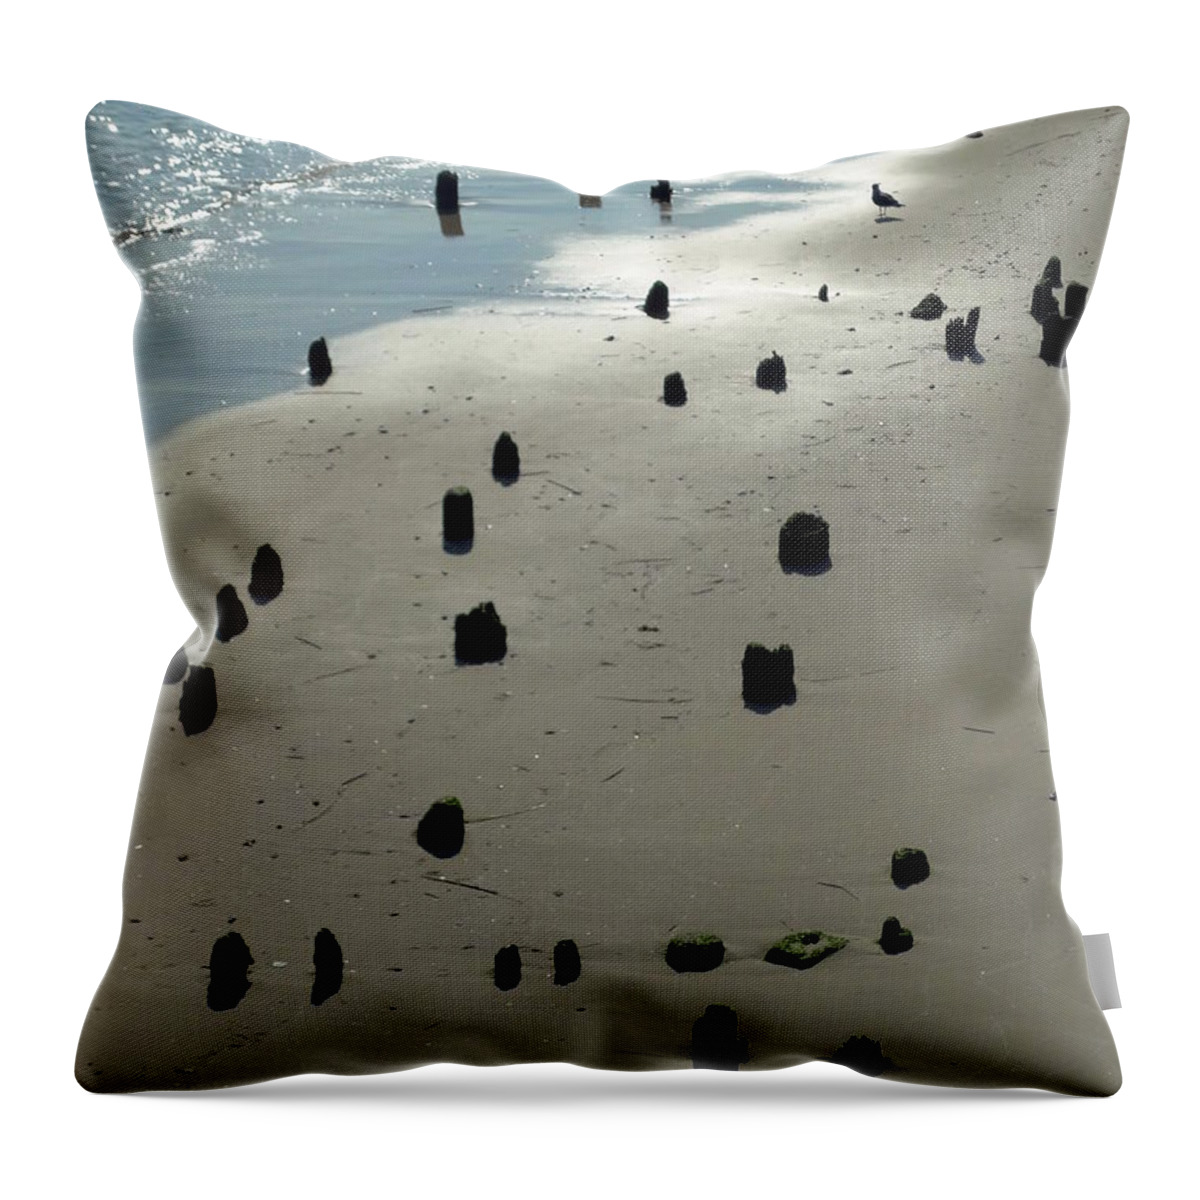 Sea Throw Pillow featuring the photograph Sea Piles by Deborah Crew-Johnson